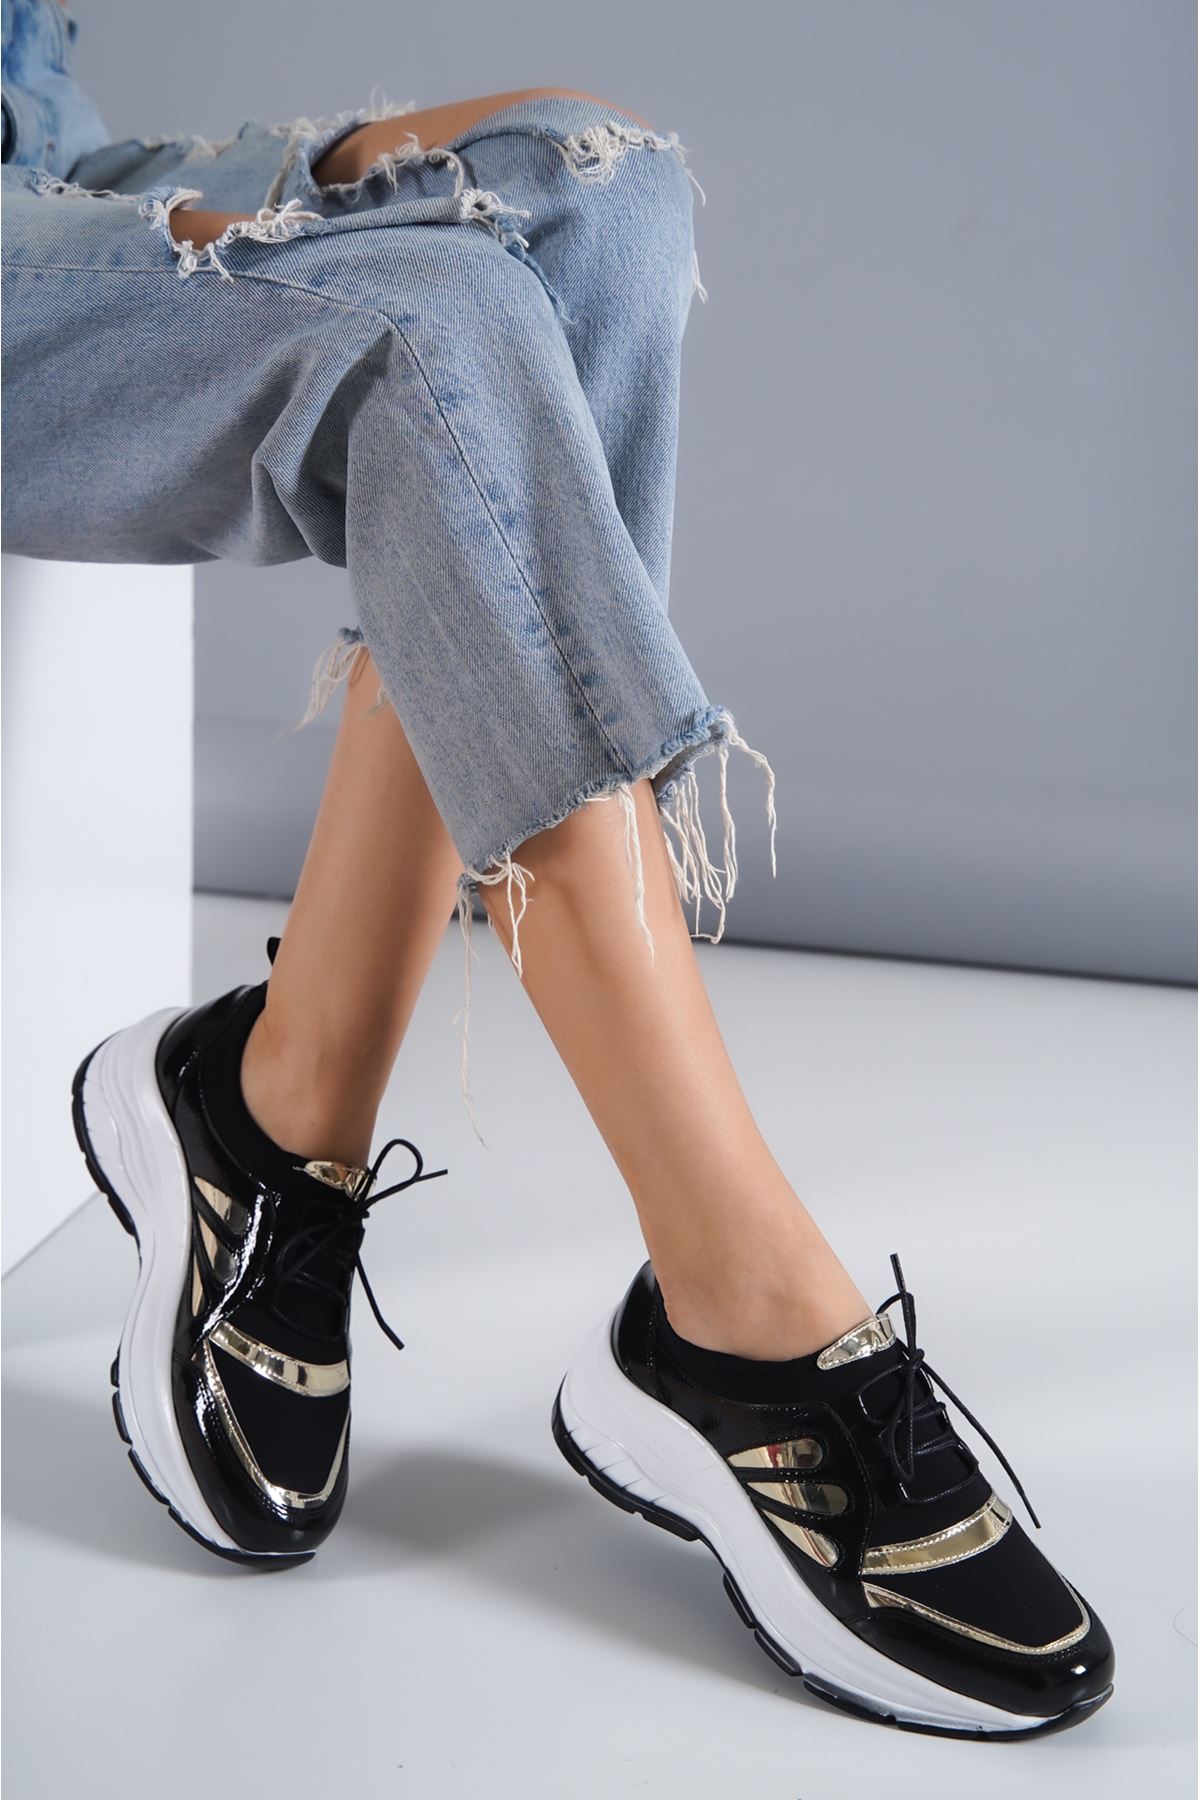 Tania Siyah - Gold Kırışık Rugan Spor Ayakkabı